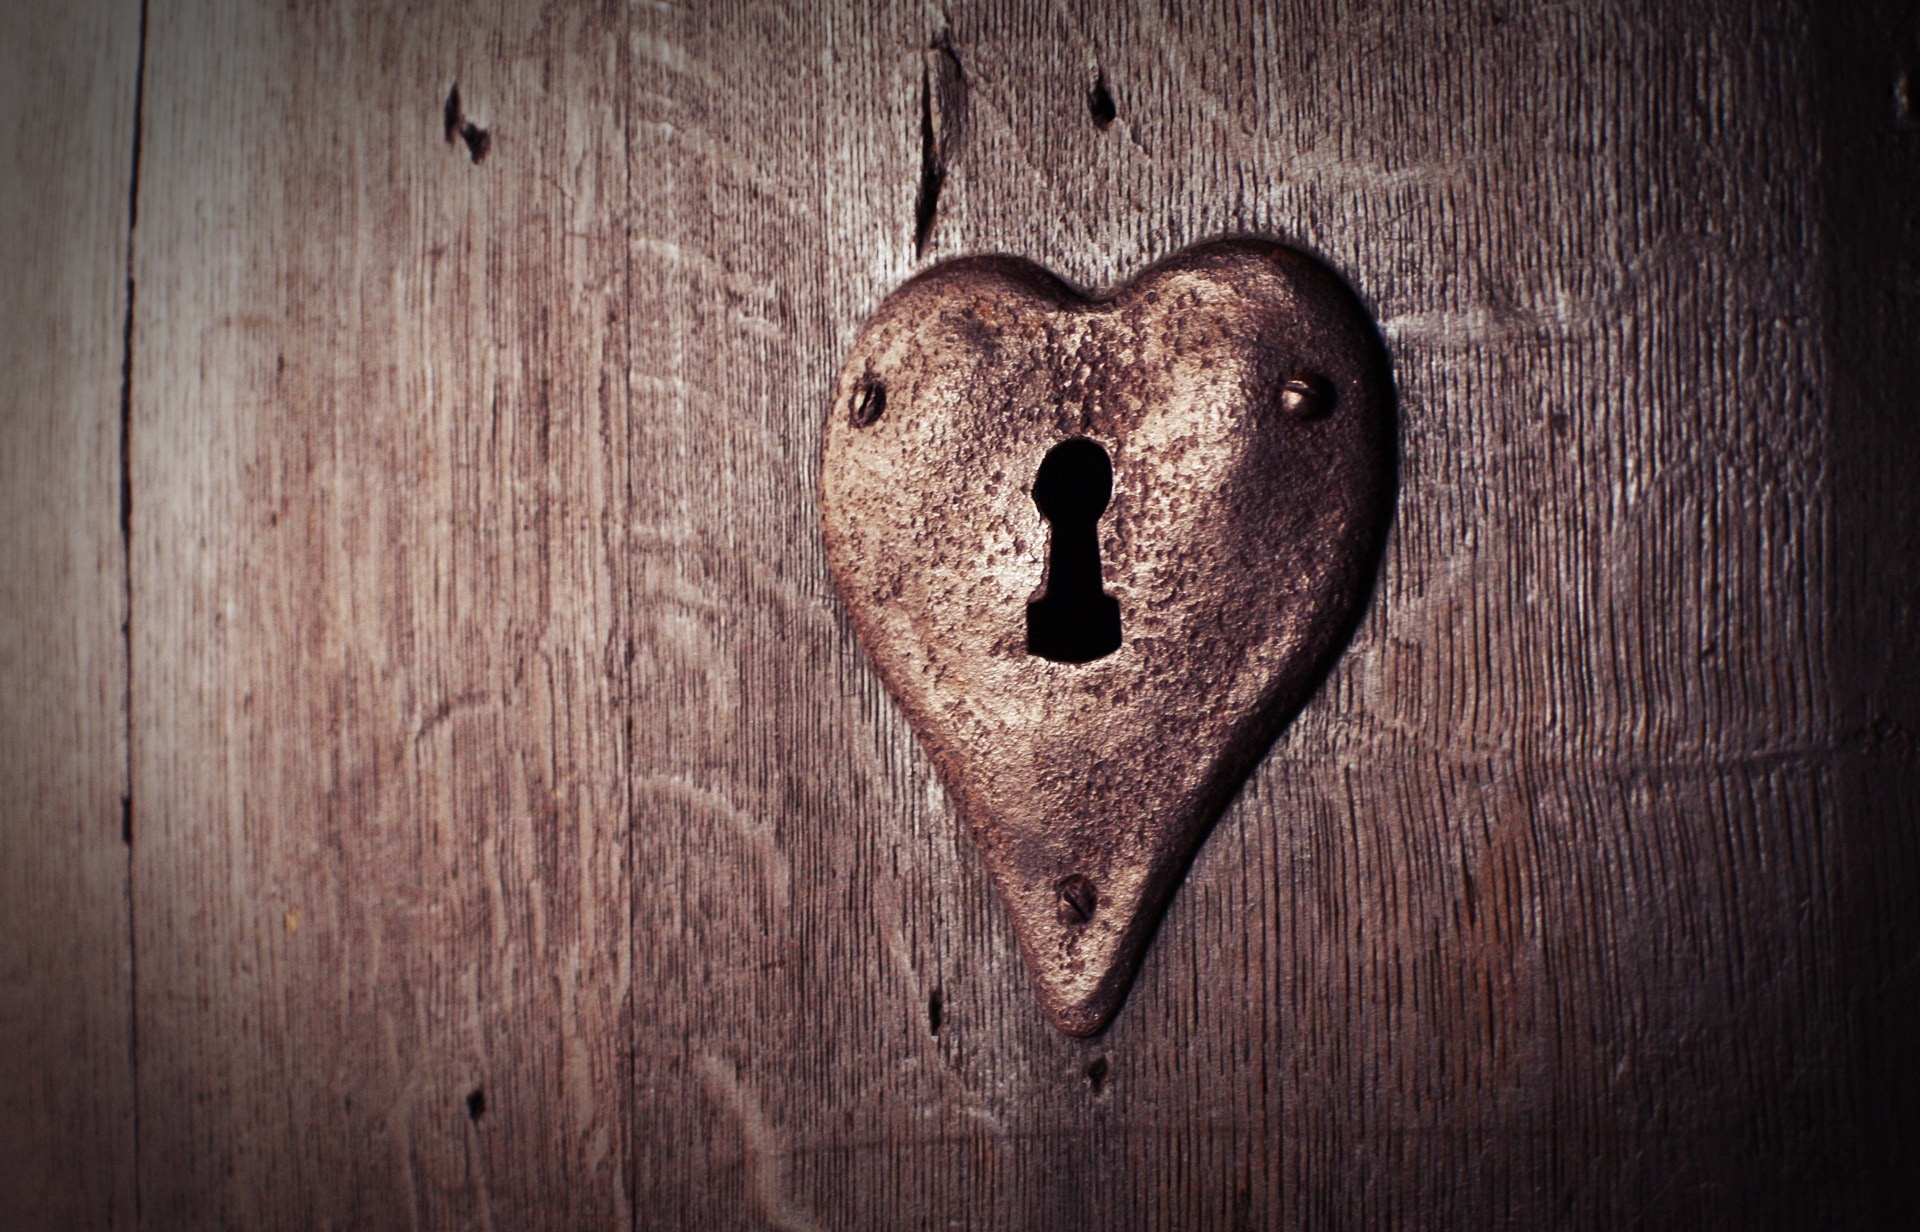 heart shaped lock